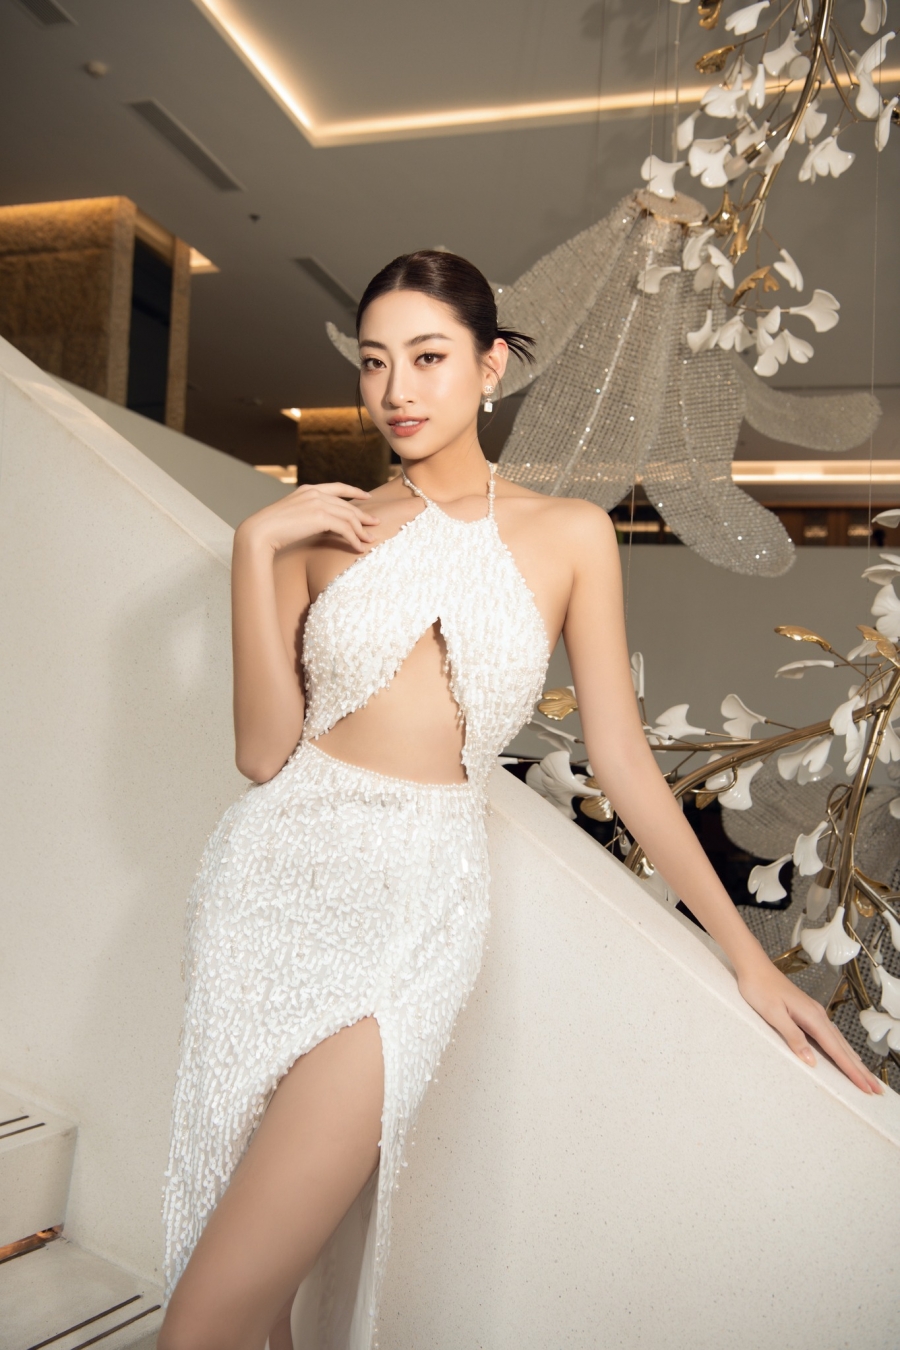 Lương Thùy Linh nhận điểm 10 với hành động tinh tế dành cho đương kim Miss World Vietnam Mai Phương - Ảnh 3